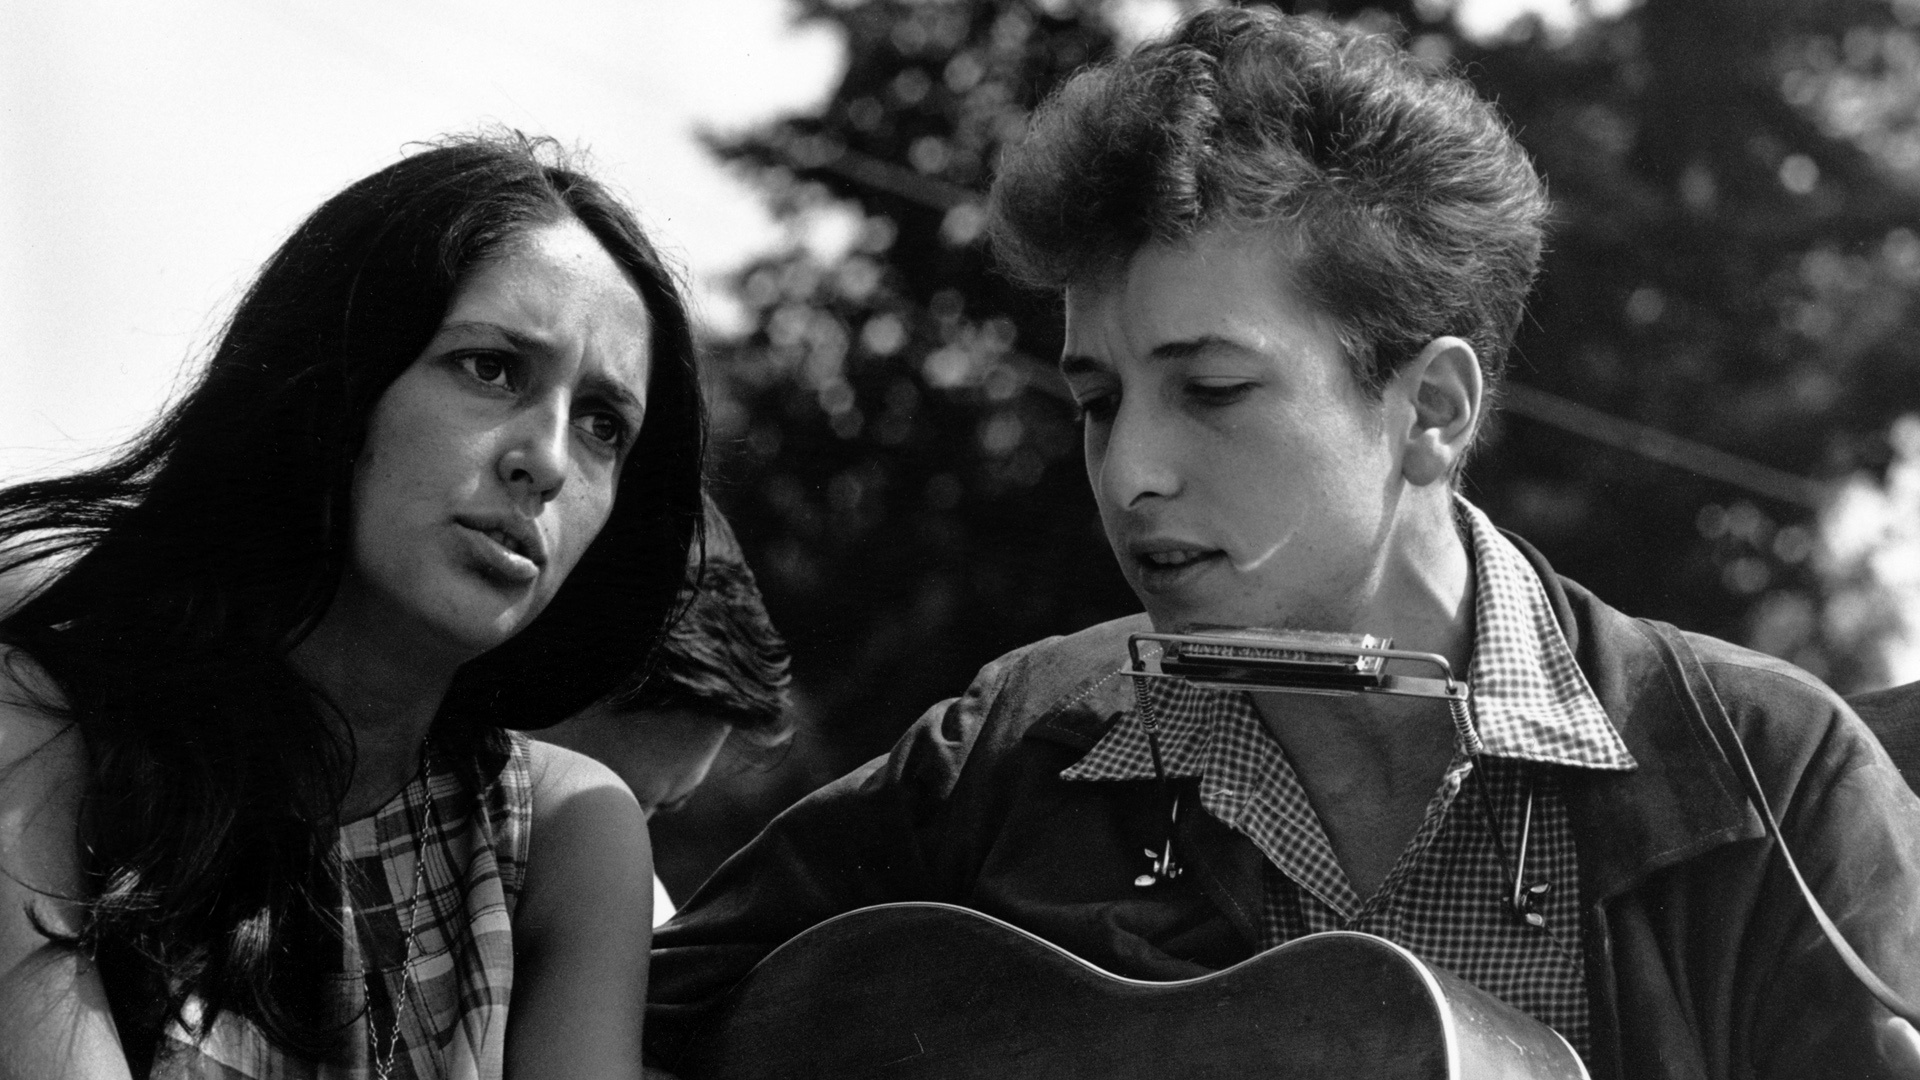 Bob Dylan: Joan Baez, Dylan, American singer-songwriters. 1920x1080 Full HD Wallpaper.